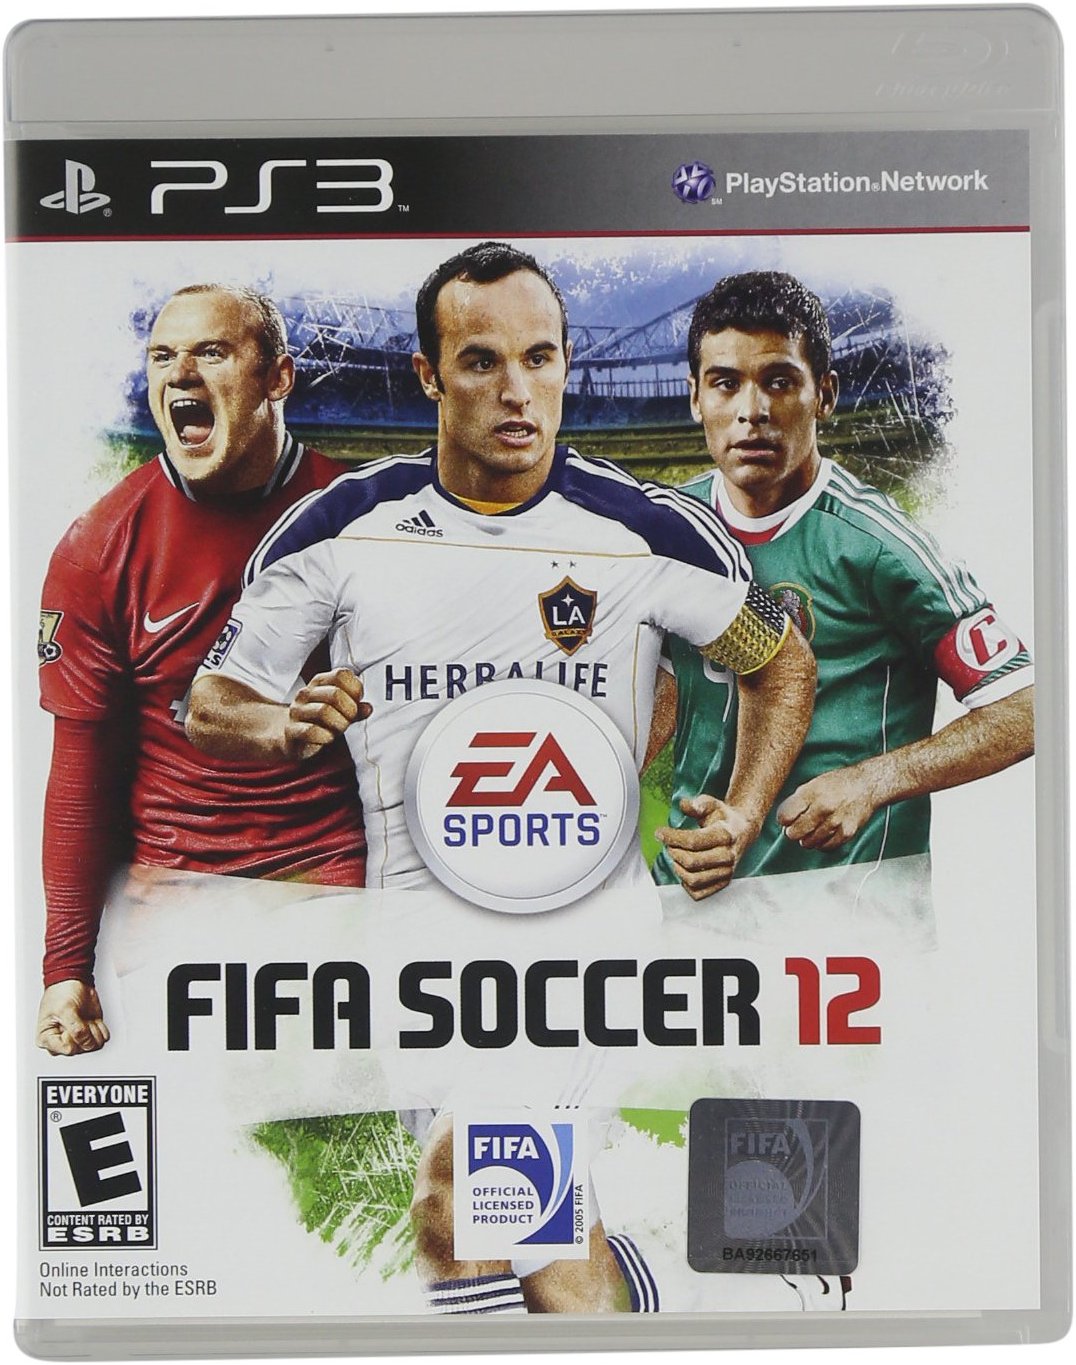 FIFA soccer 12